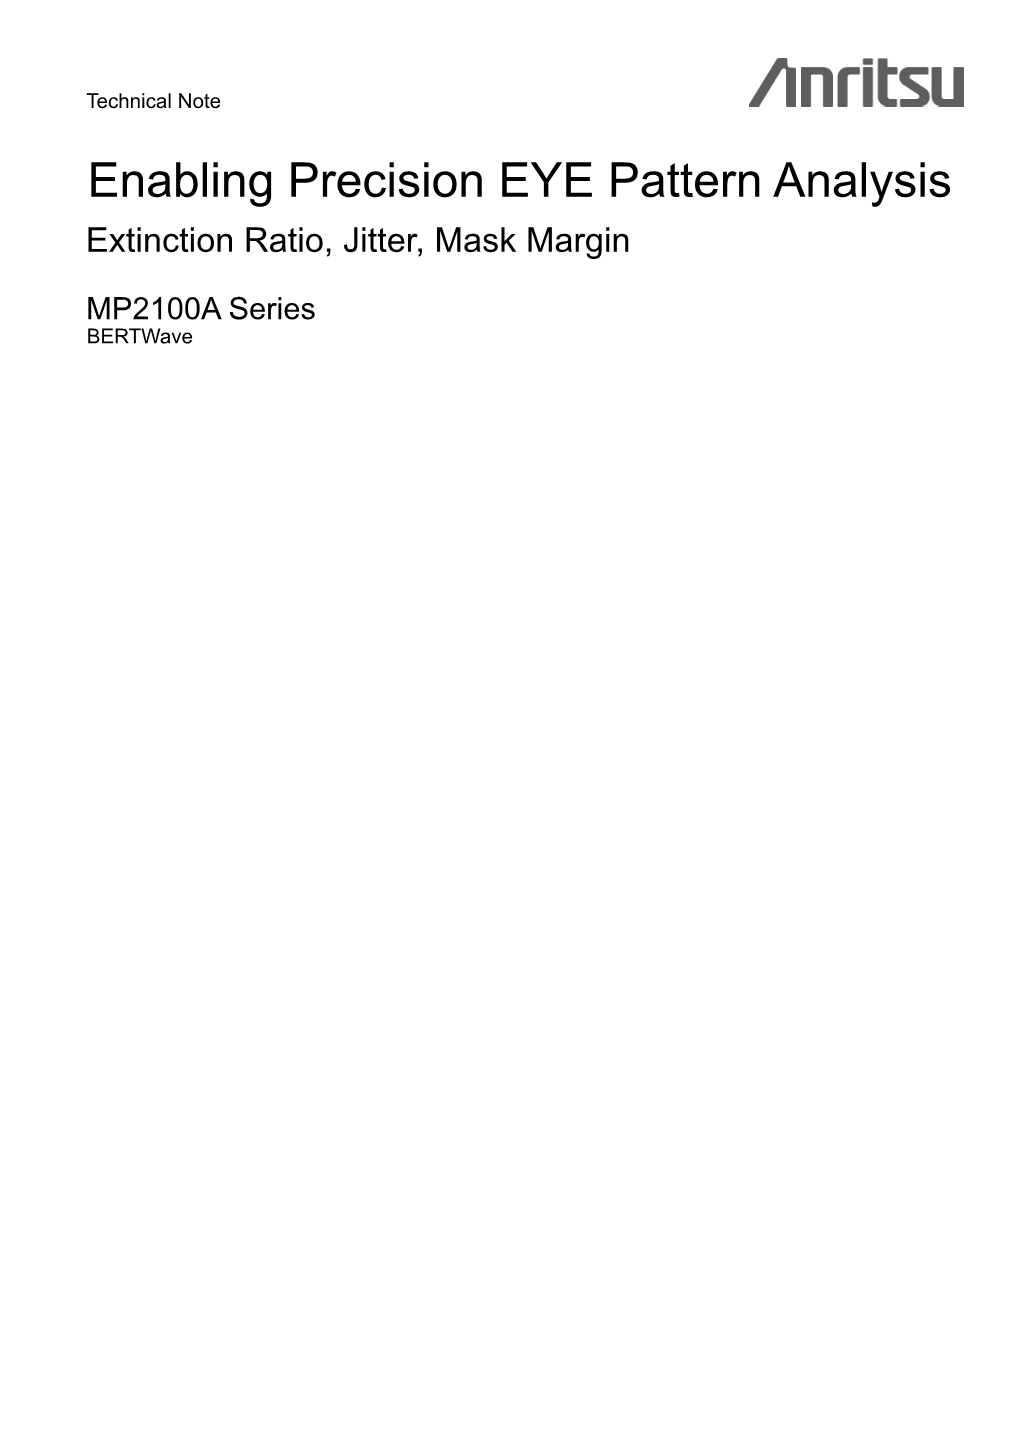 Enabling Precision EYE Pattern Analysis Extinction Ratio, Jitter, Mask Margin